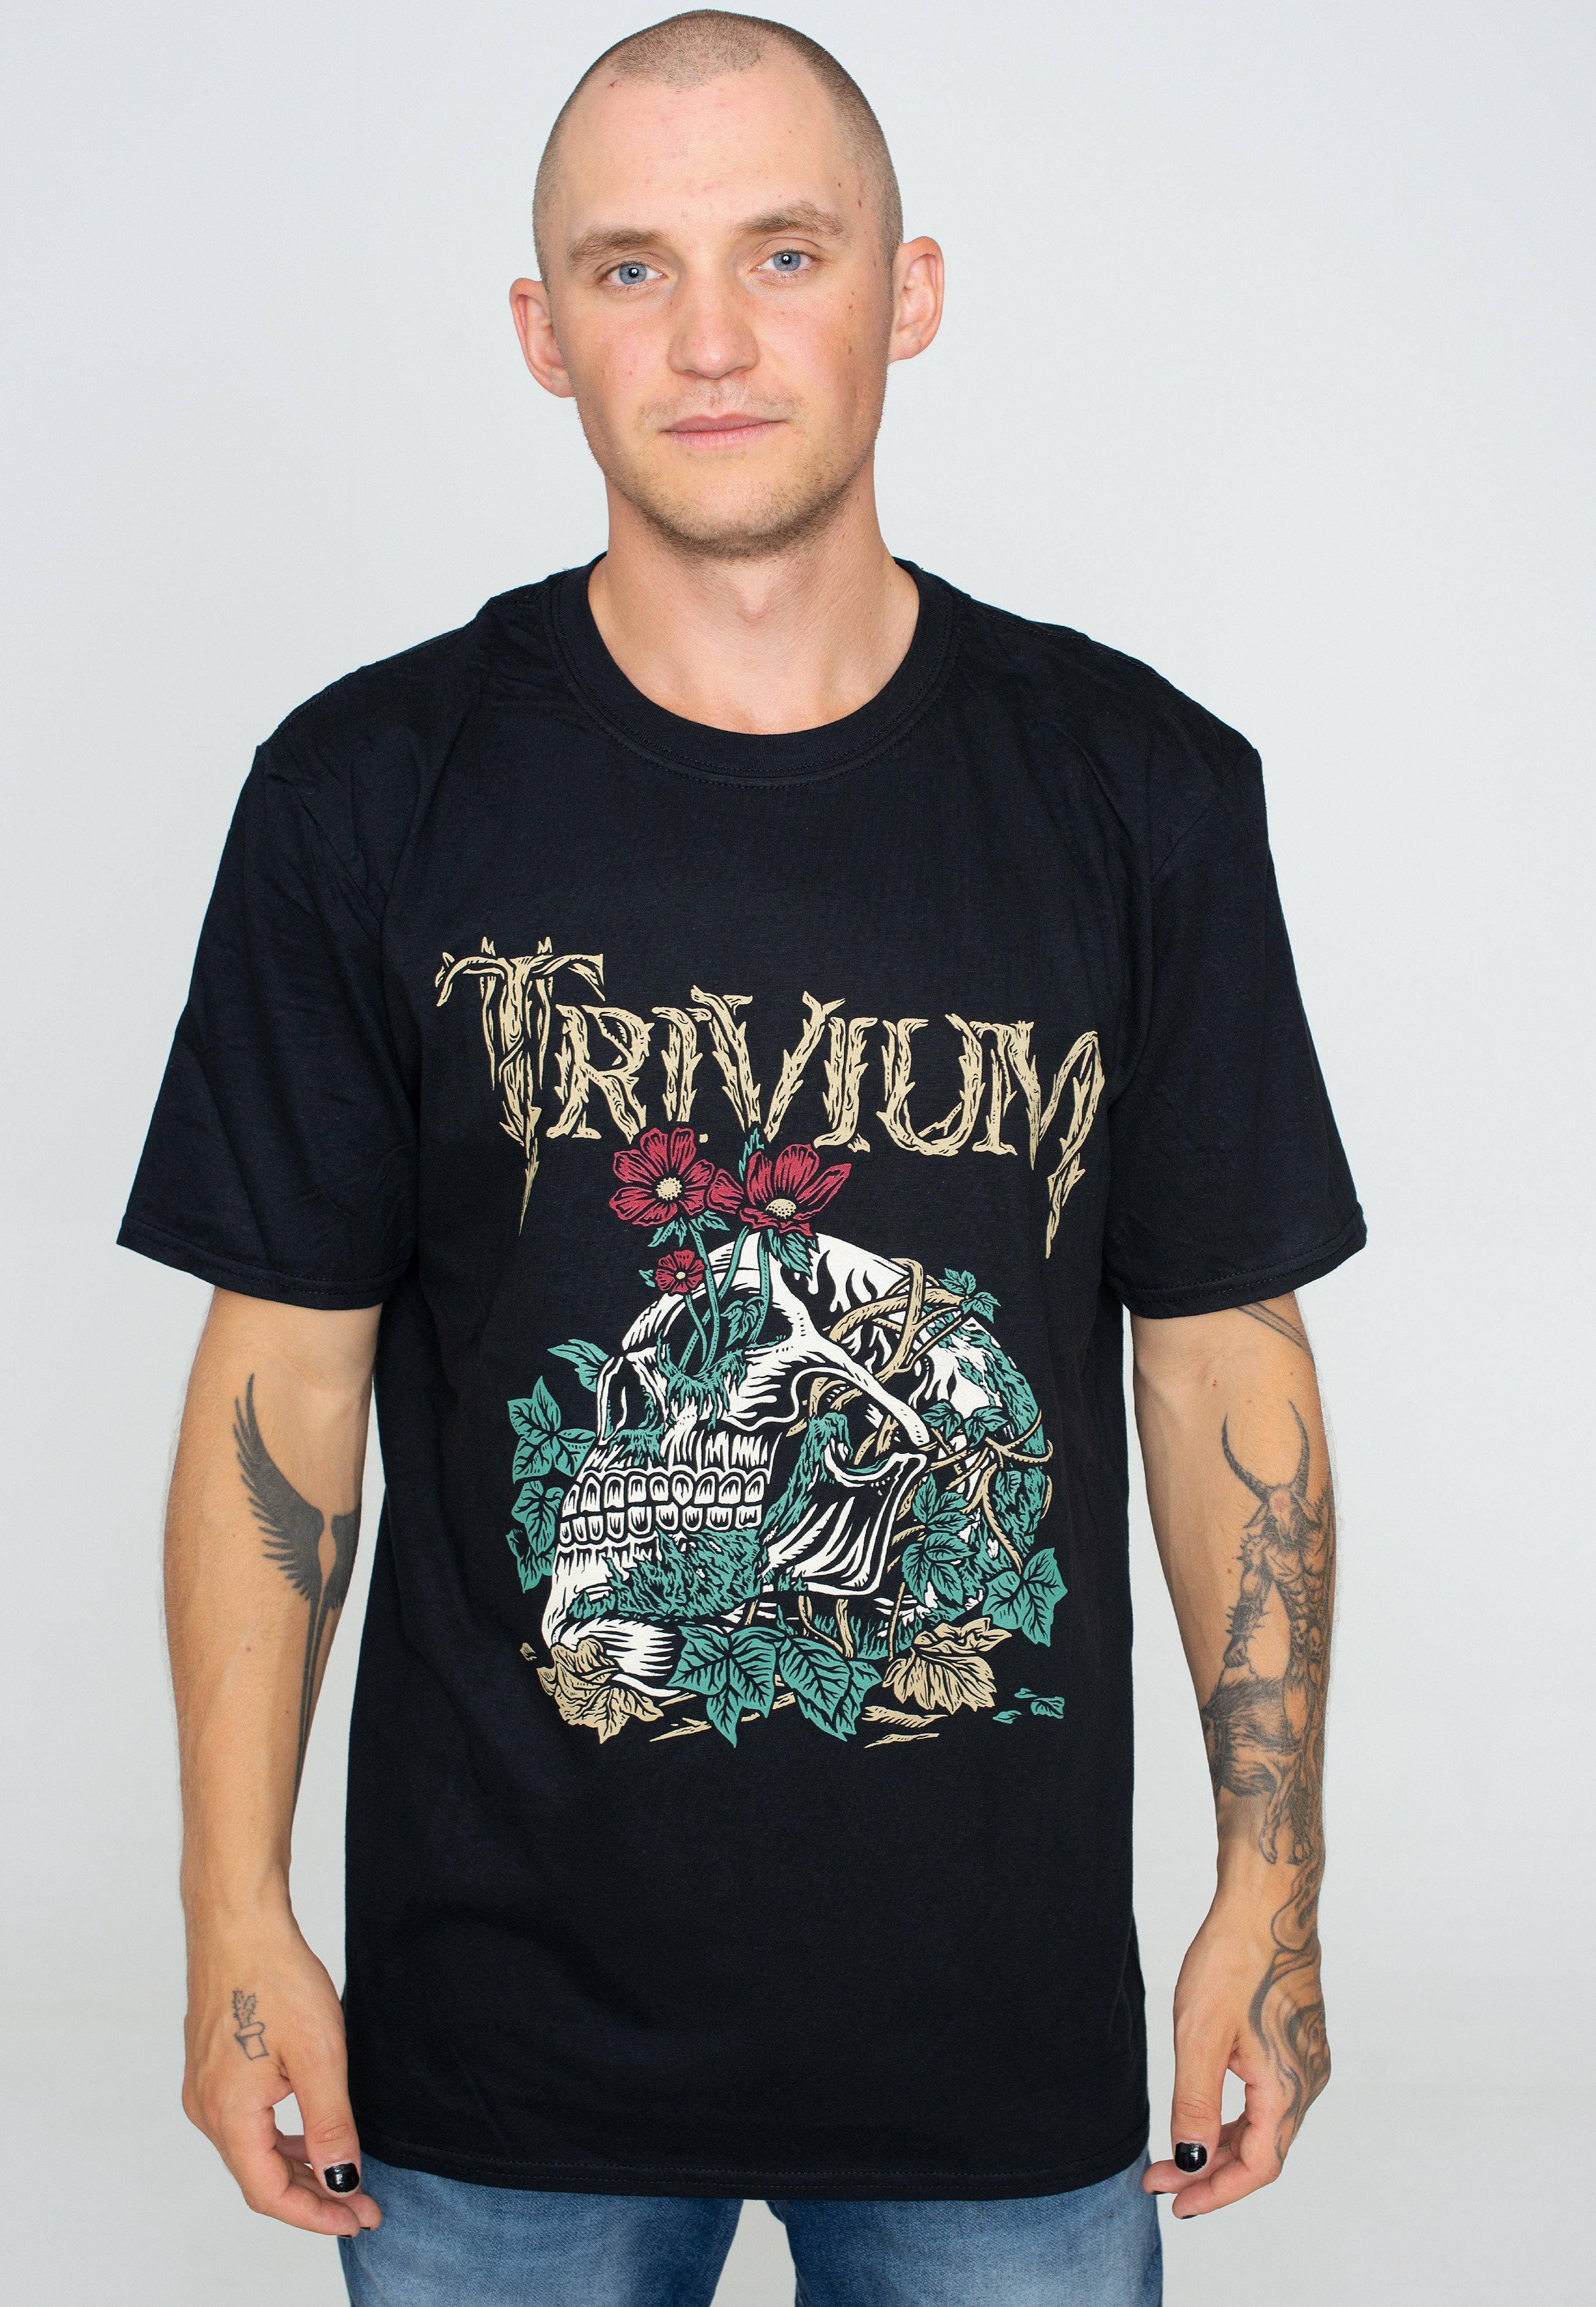 Trivium - Skelly Flower - T-Shirt